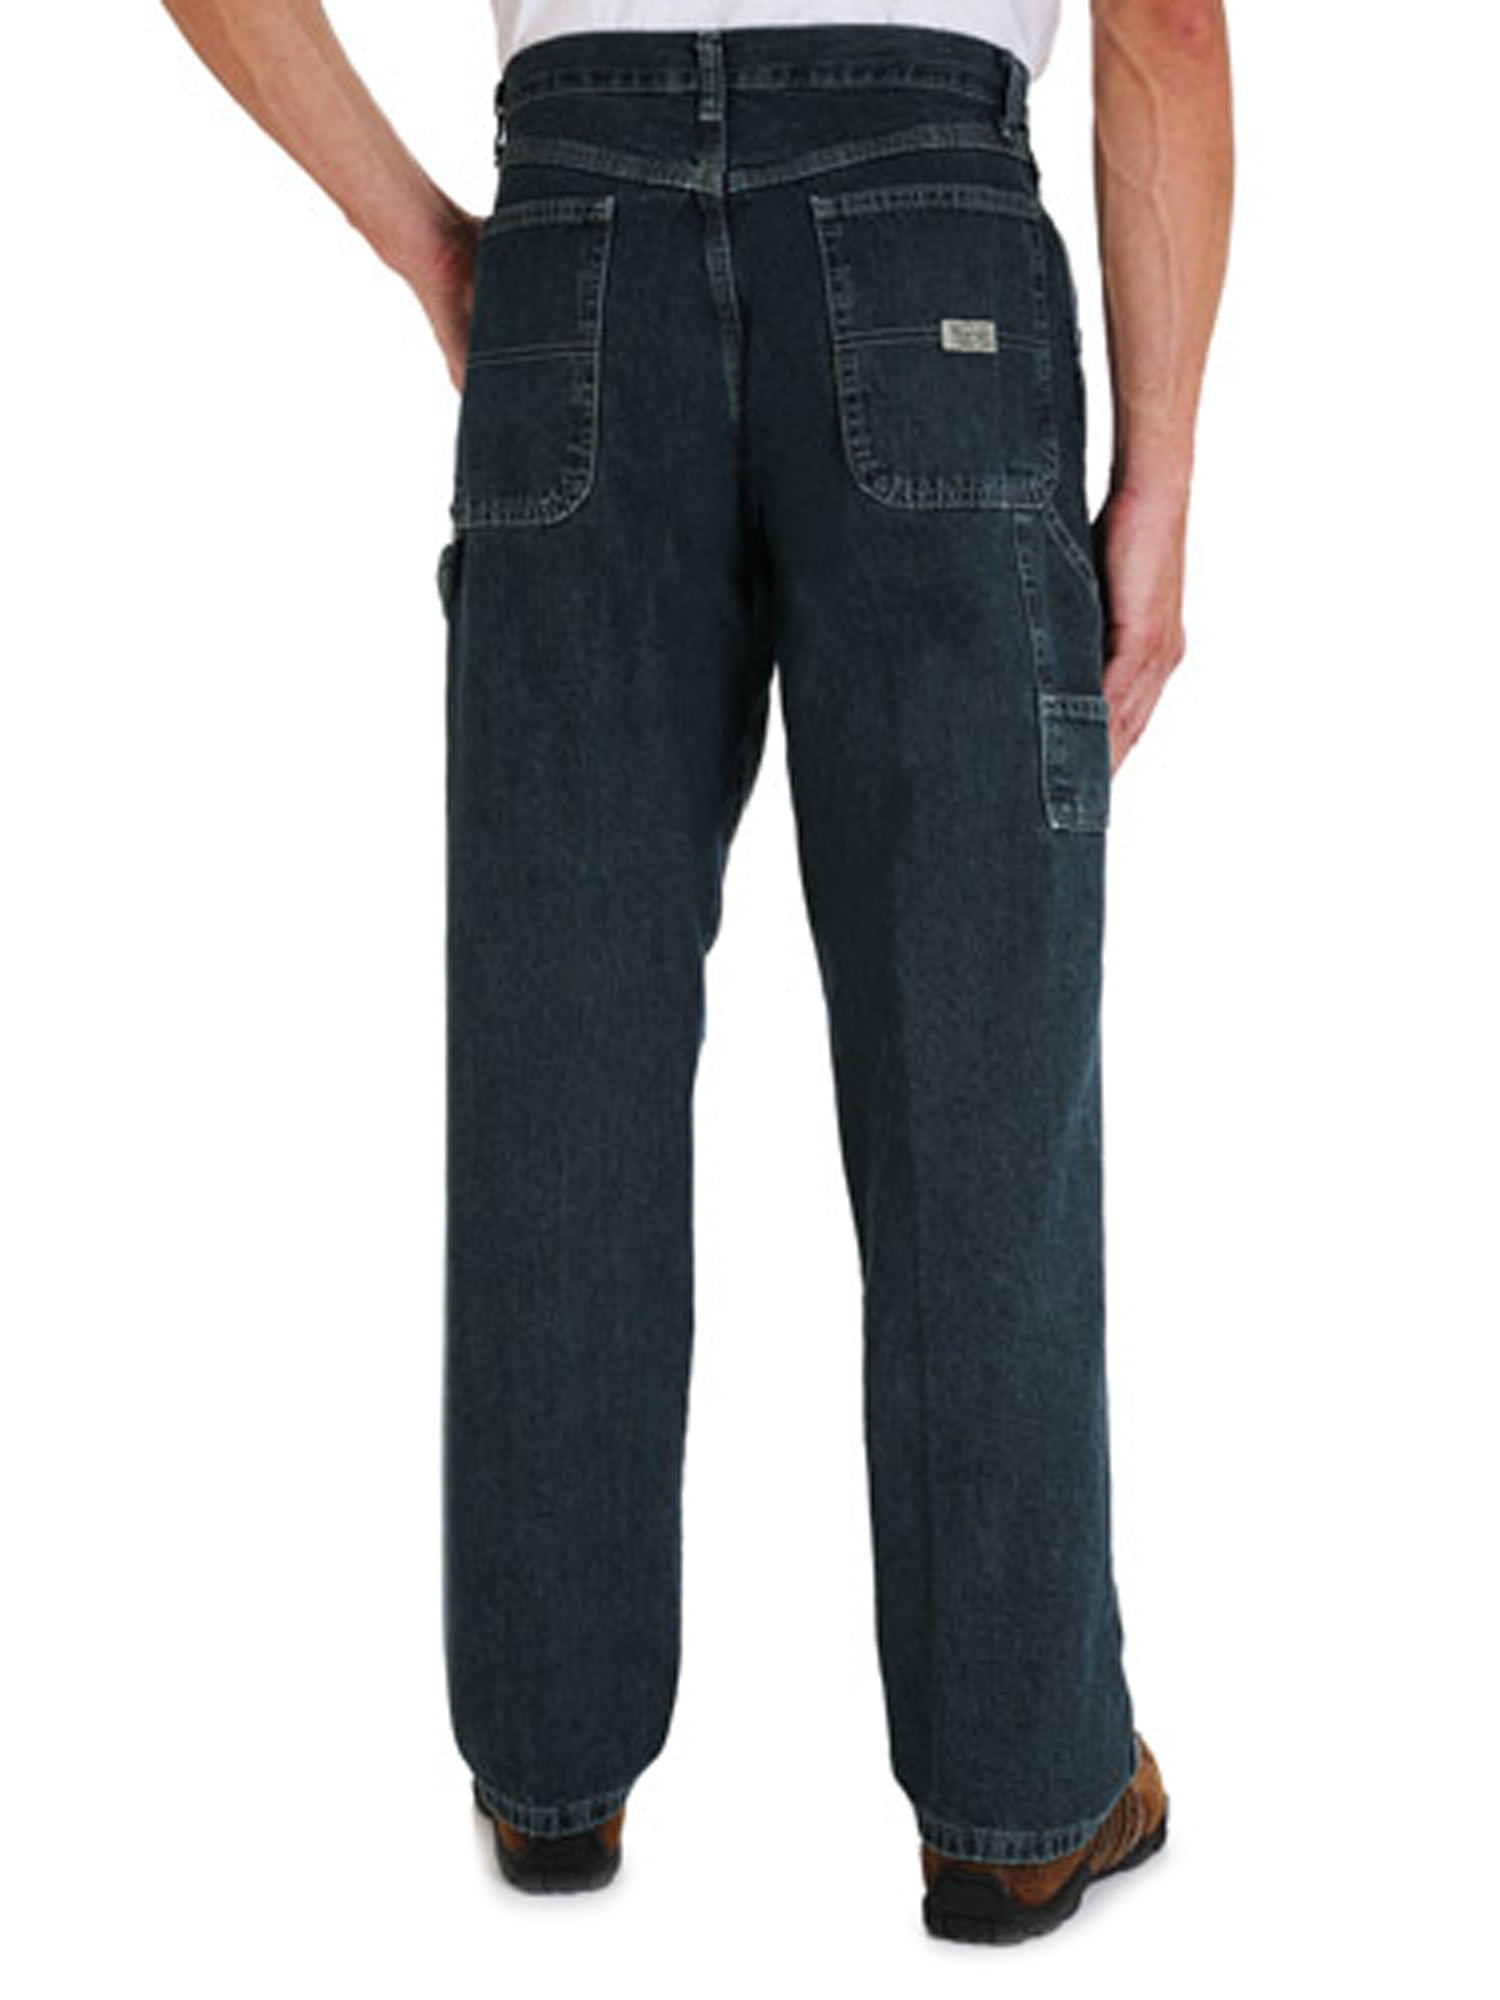 walmart wrangler carpenter jeans